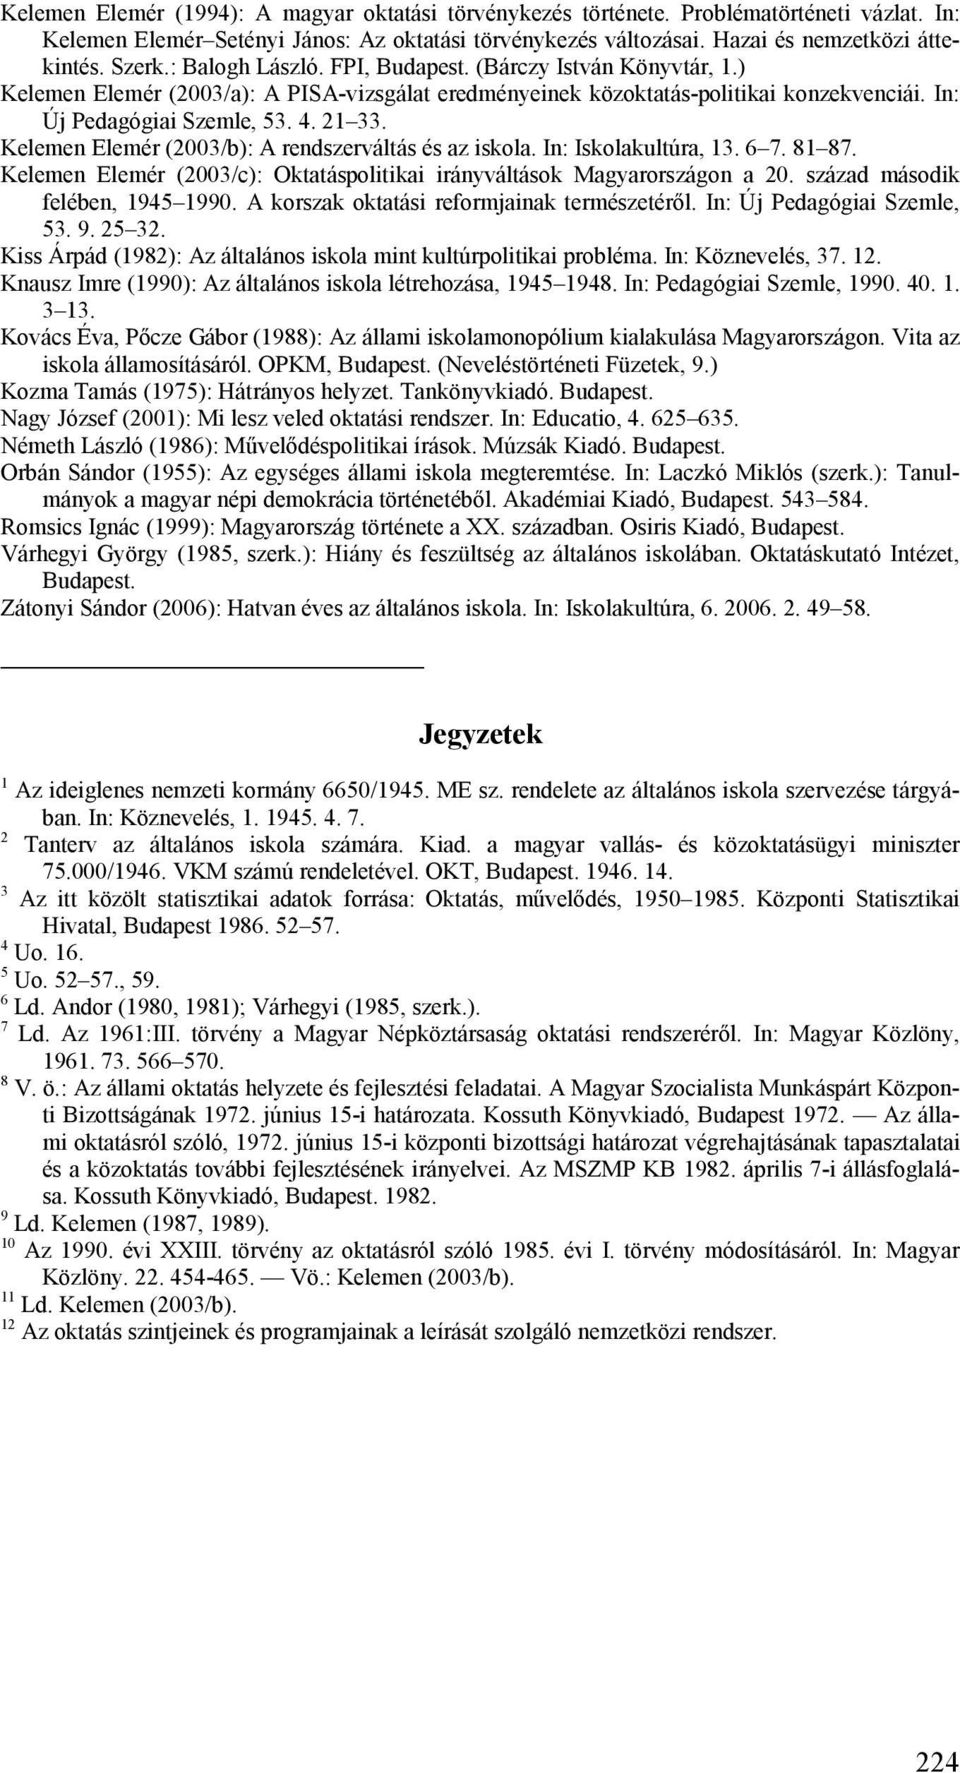 Kelemen Elemér (2003/b): A rendszerváltás és az iskola. In: Iskolakultúra, 13. 6 7. 81 87. Kelemen Elemér (2003/c): Oktatáspolitikai irányváltások Magyarországon a 20.